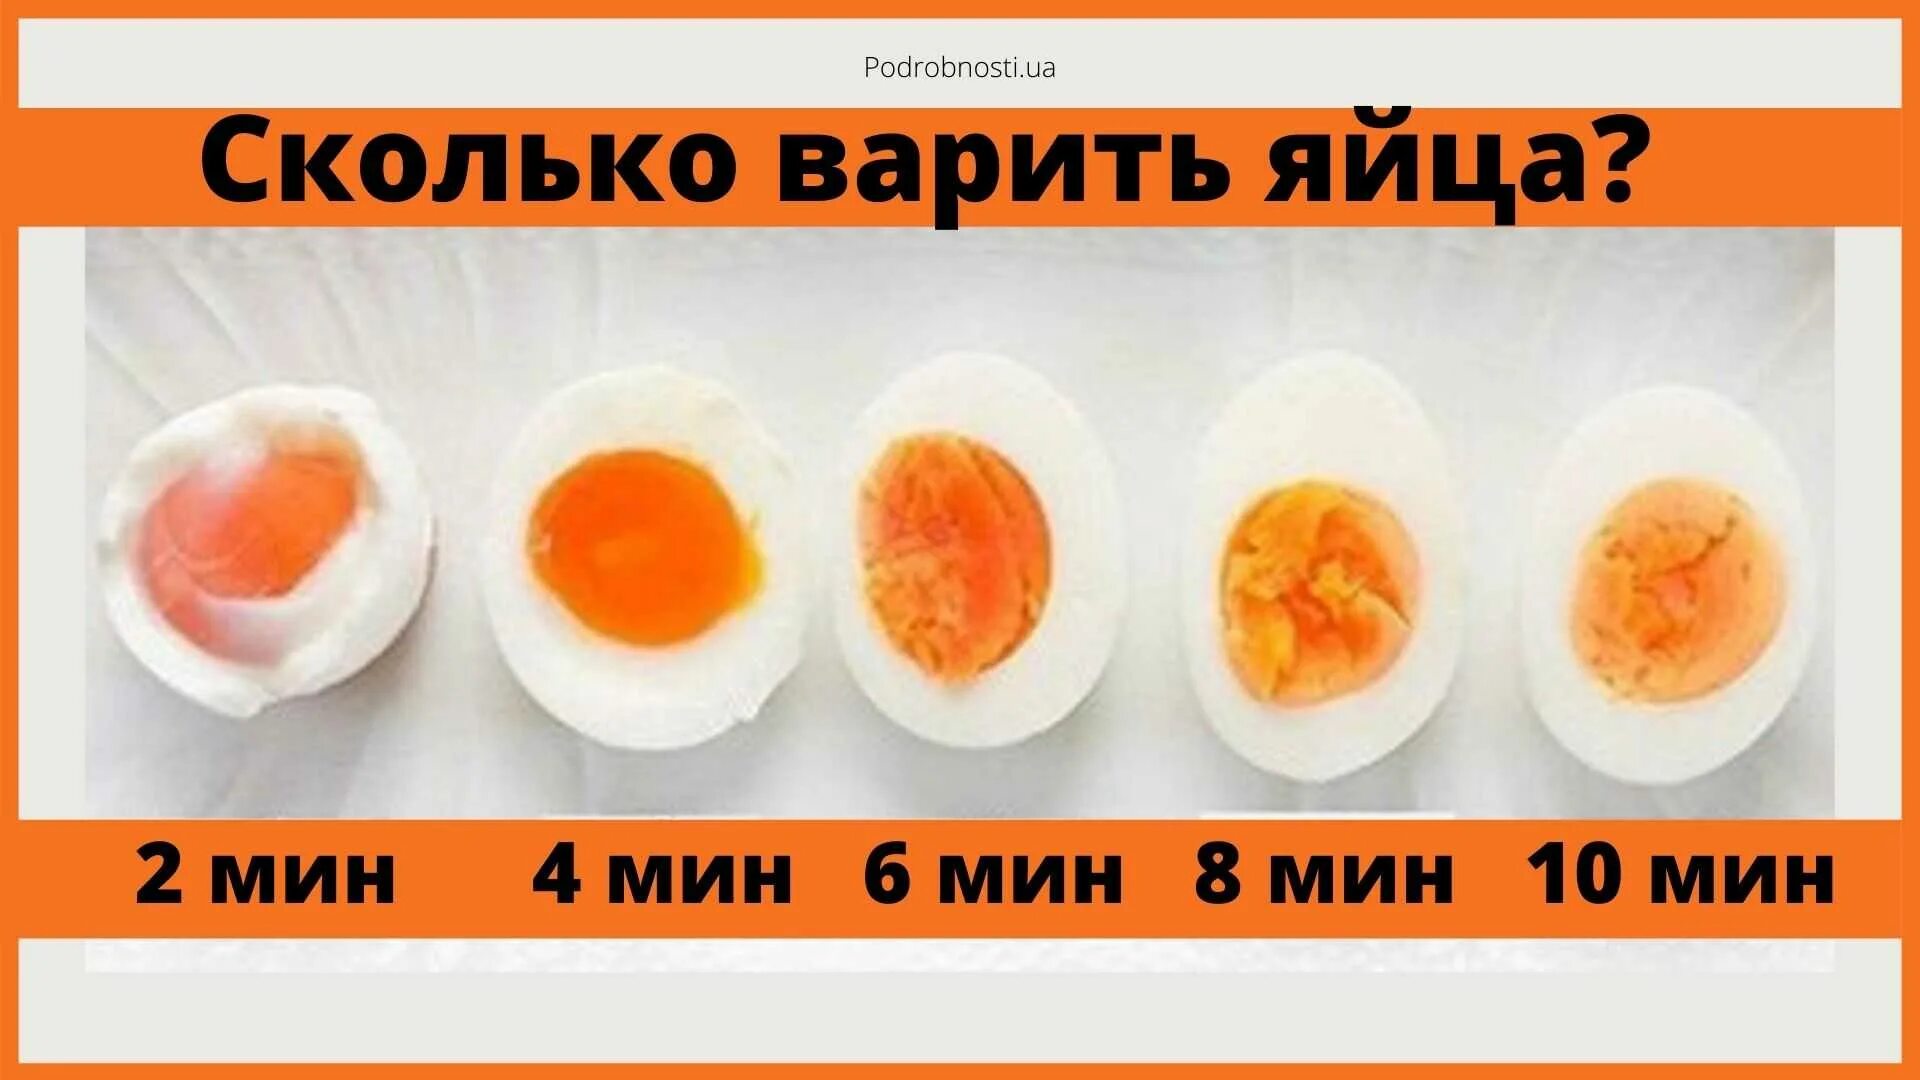 Сколько нужно варить яйца чтобы были всмятку. Сколько варить яйца. Сколько варить яицо всмятку. Сколько варить яйца в смчткк. Яйцо в смчтку сколтко вприть.